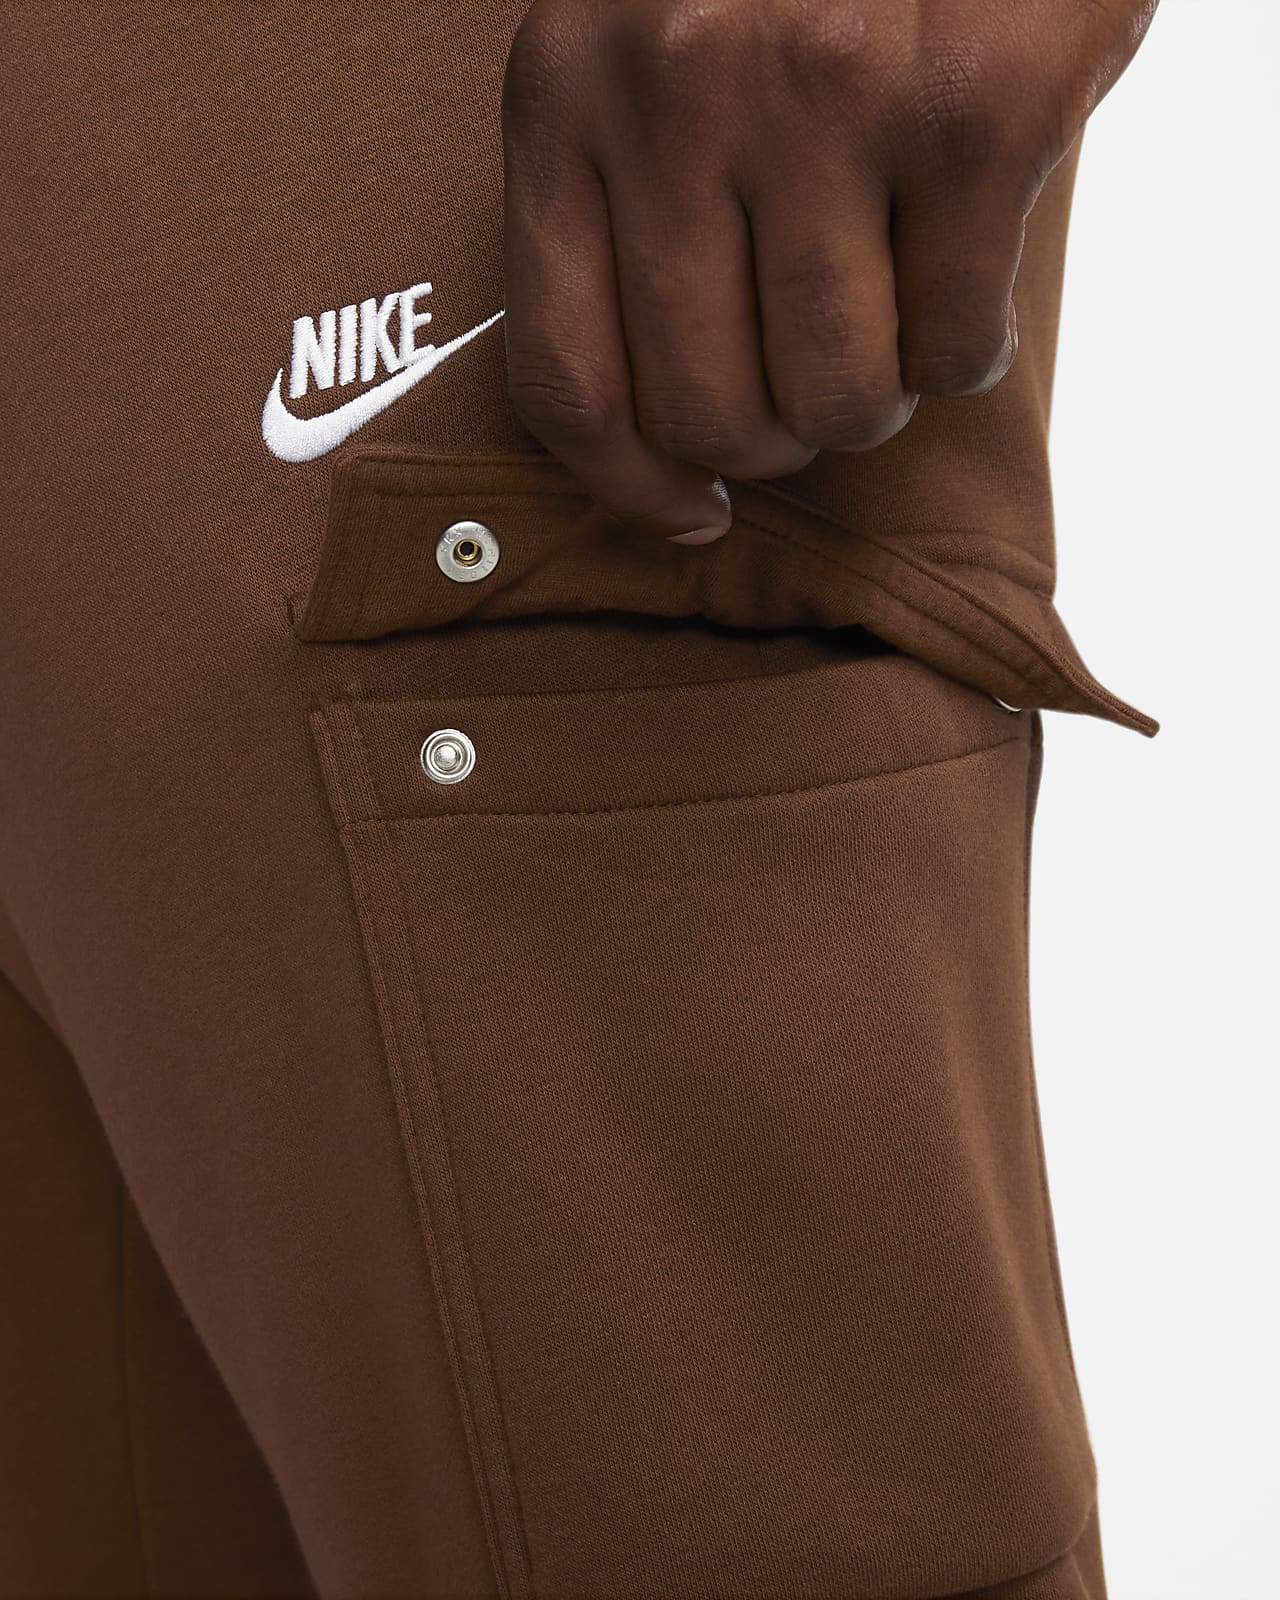 NIKE Nike Sportswear Tech Fleece Men's Joggers, Brown Men's